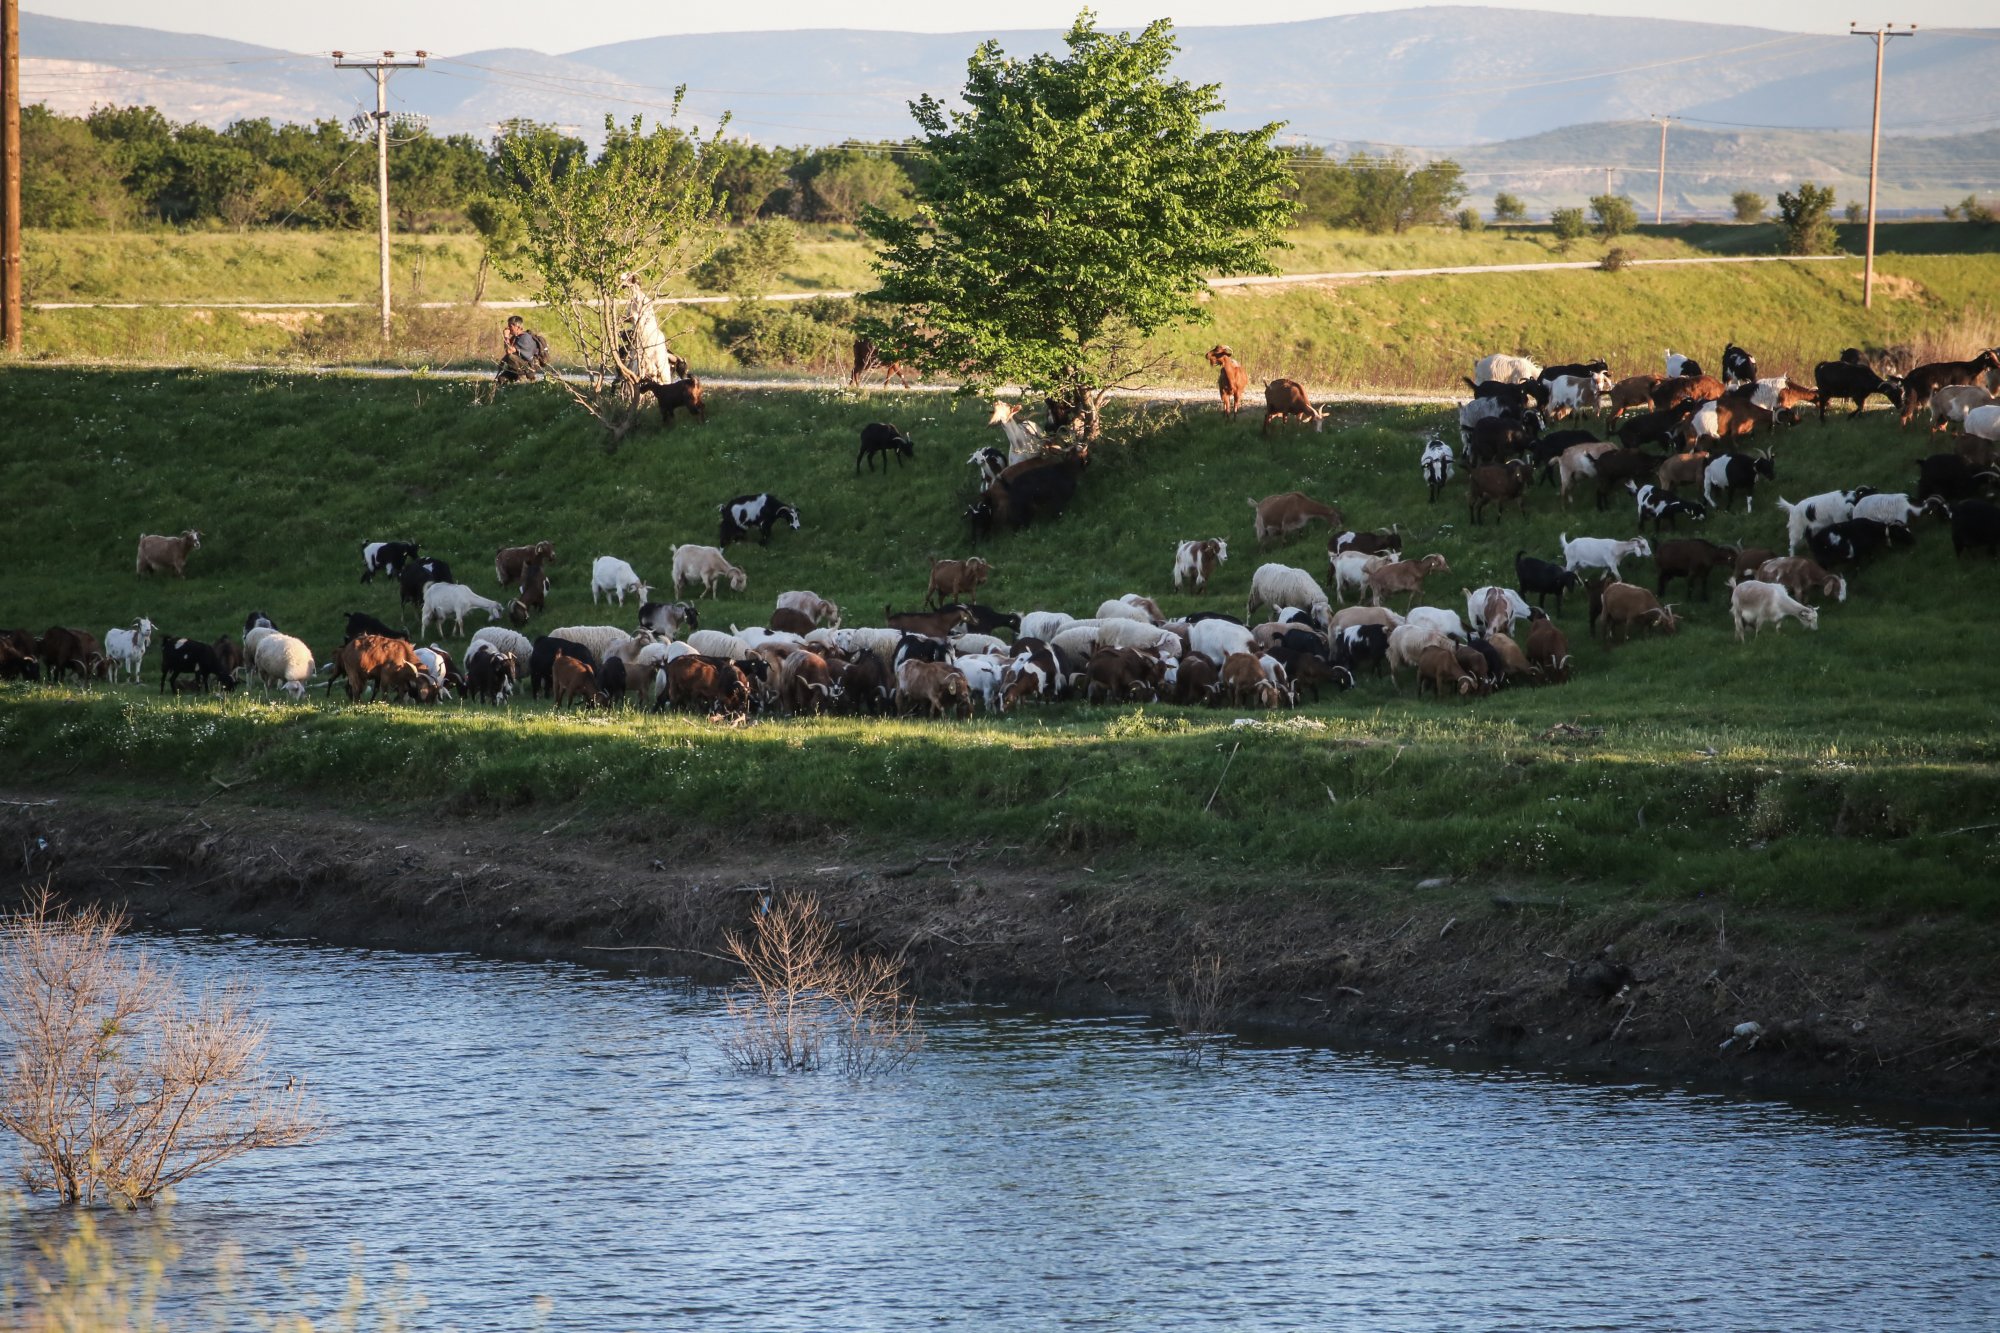 Πανώλη: Νέο κρούσμα πανώλης σε αιγοπρόβατα στη Λάρισα – «Απειλείται το ζωικό κεφάλαιο της Περιφέρειας»